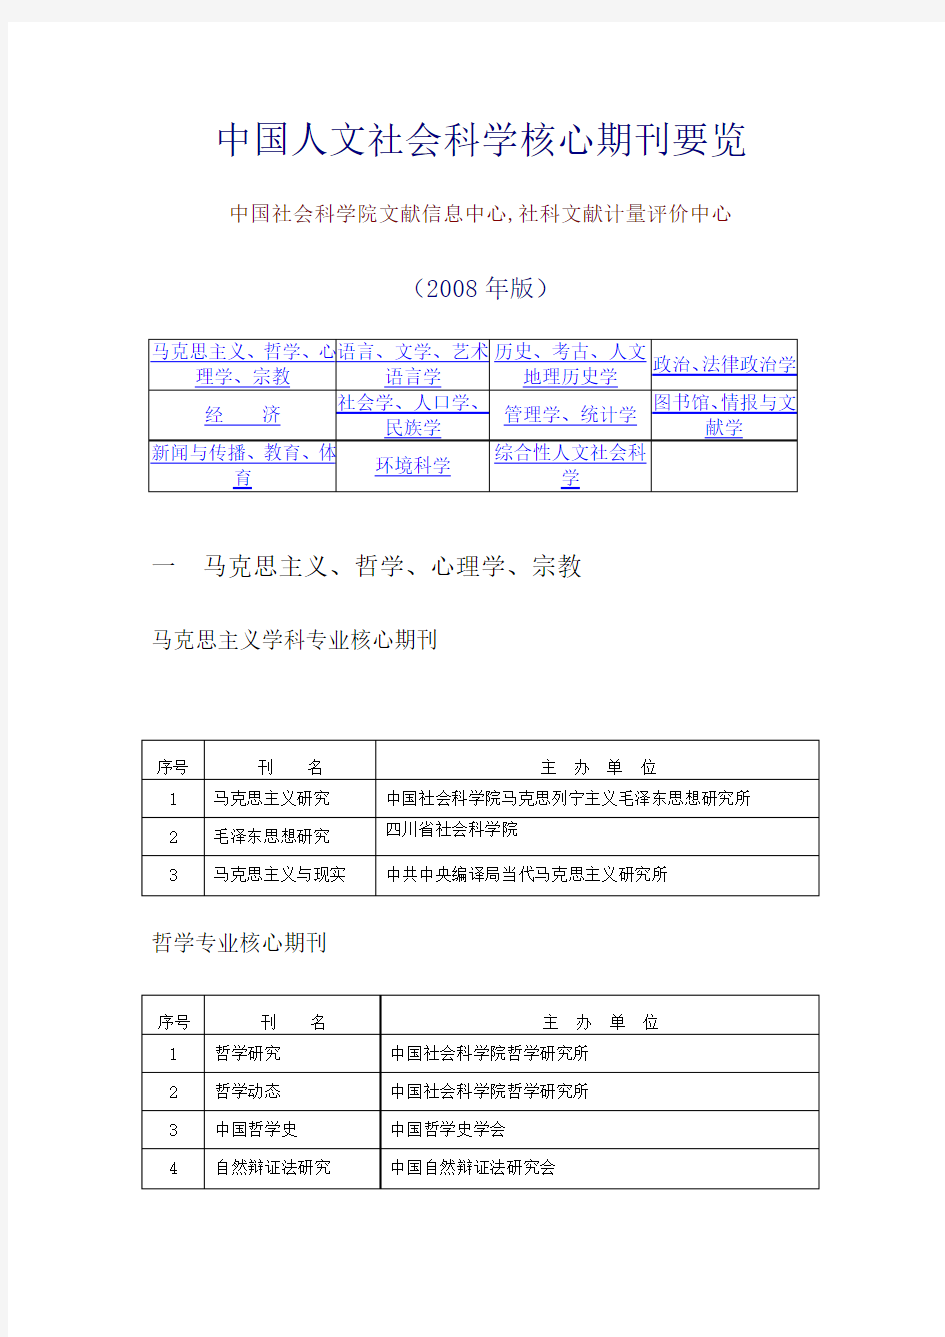 中国人文社会科学核心期刊要览(2008年版)